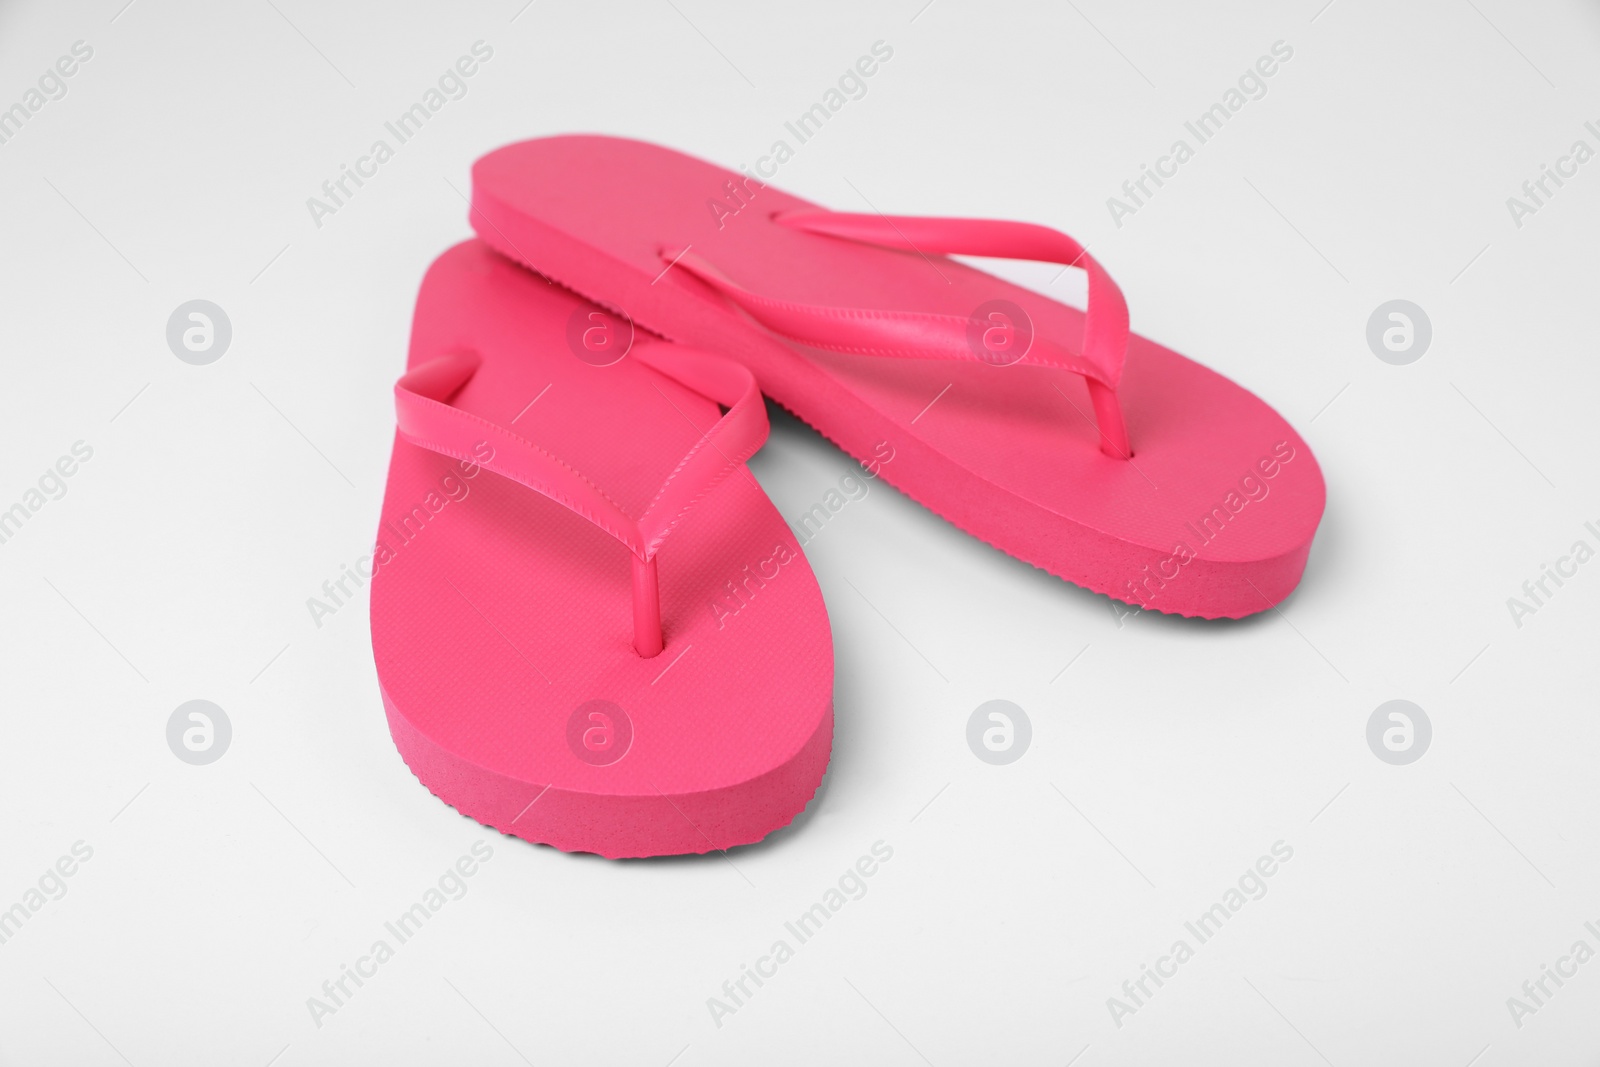 Photo of Stylish pink flip flops on white background